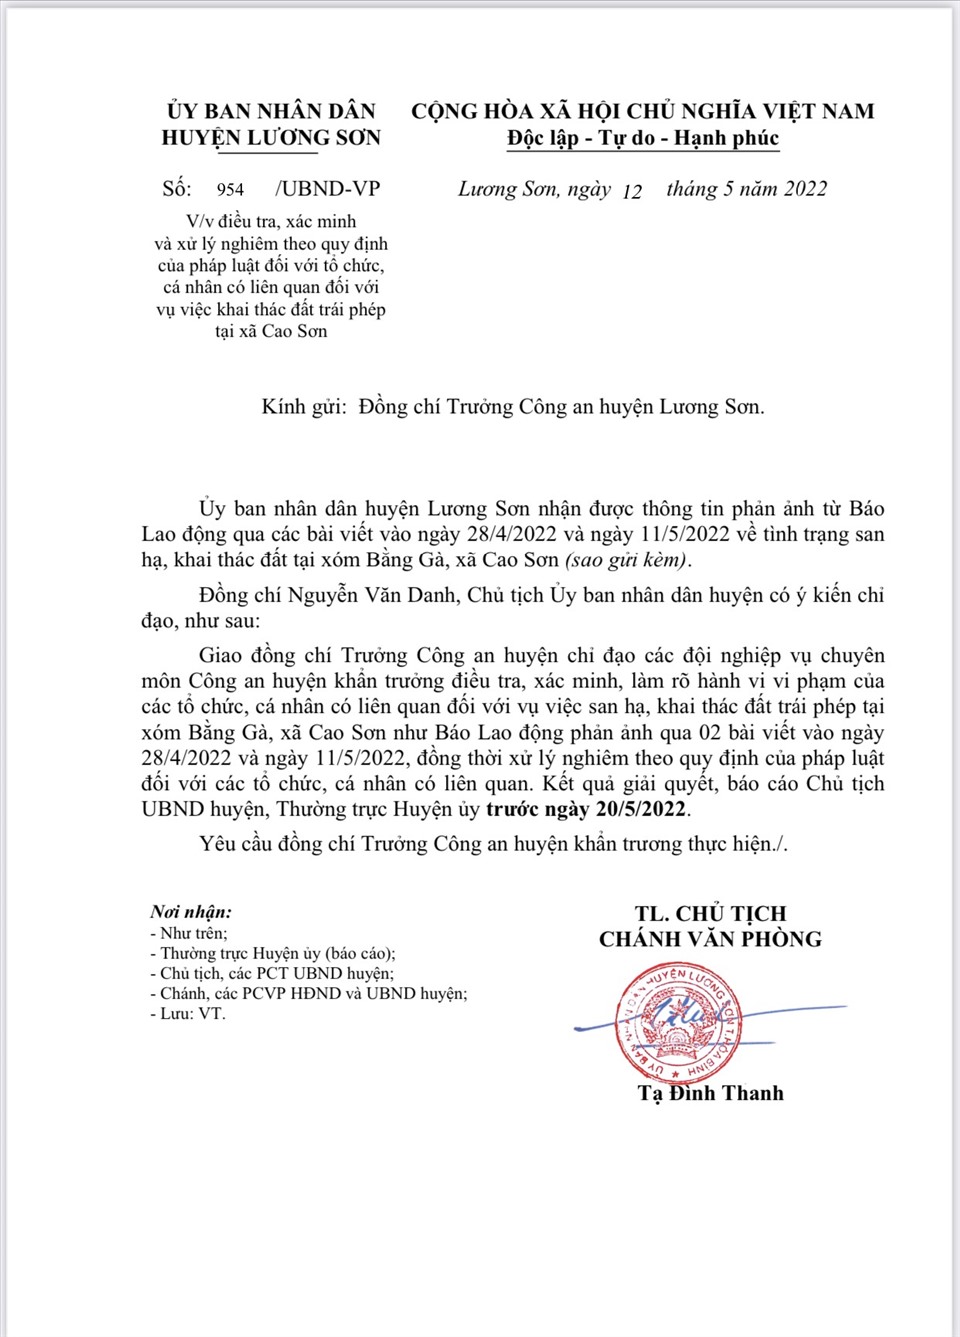 Văn bản chỉ đạo của UBND huyện Lương Sơn.